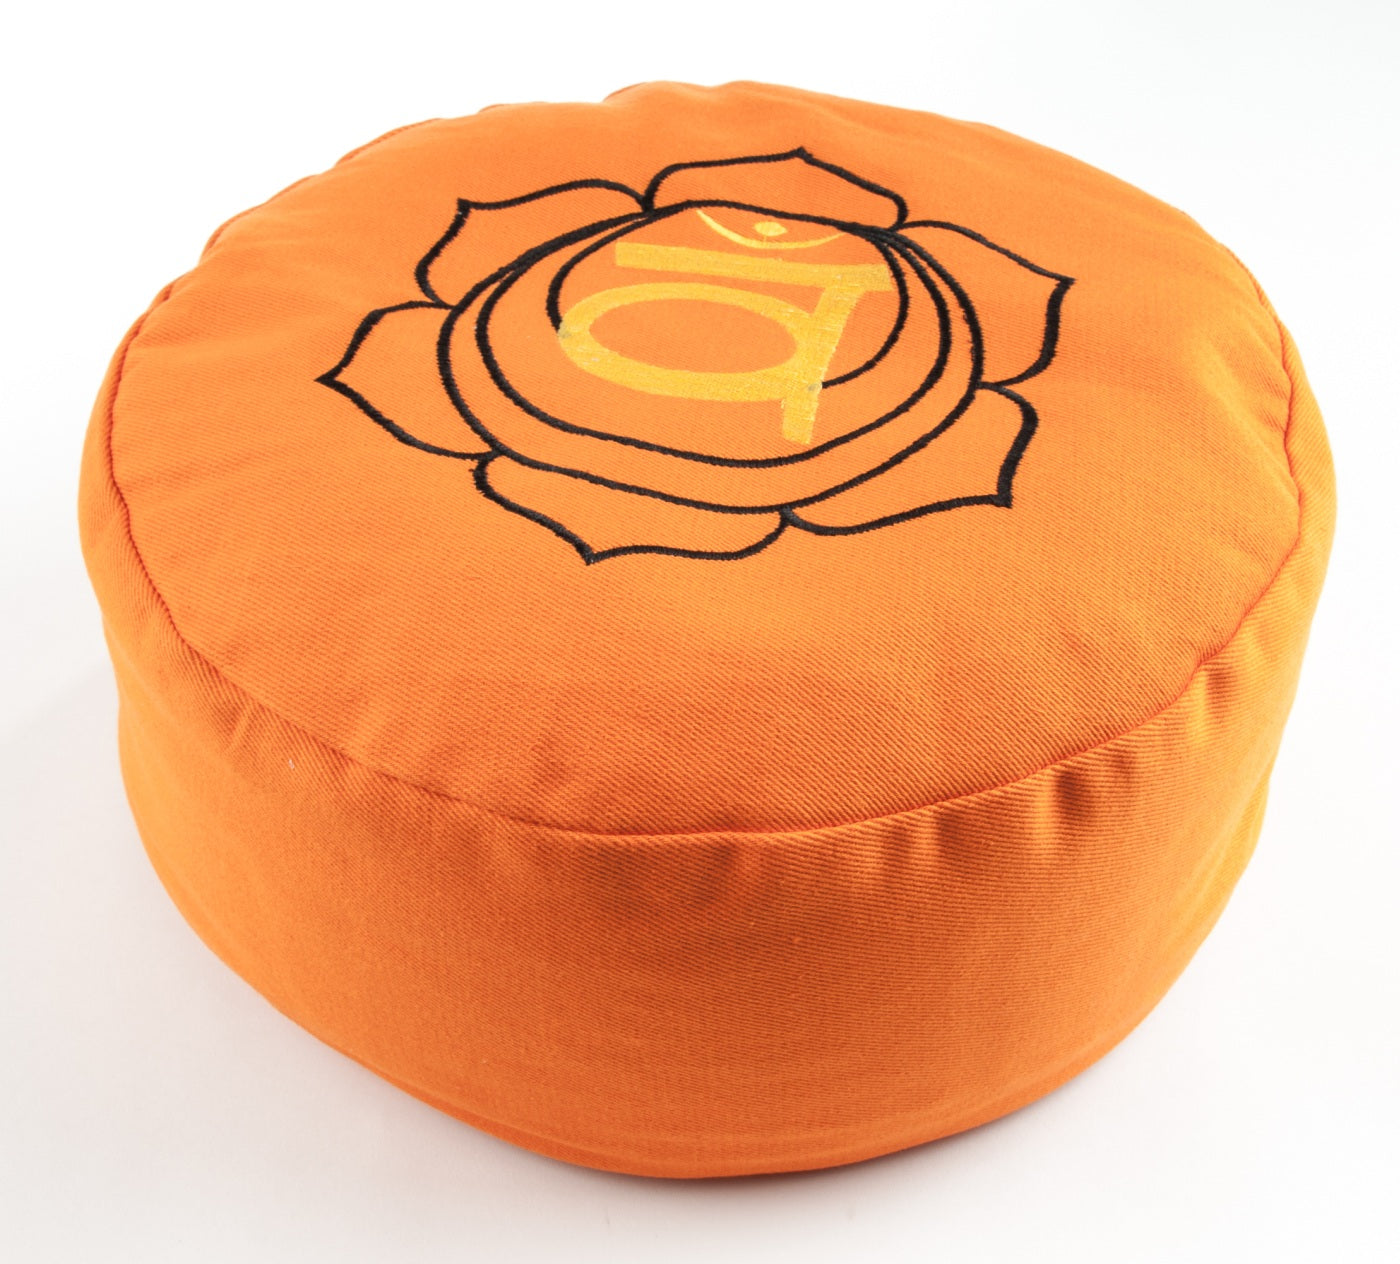 Sacral chakra meditation cushion